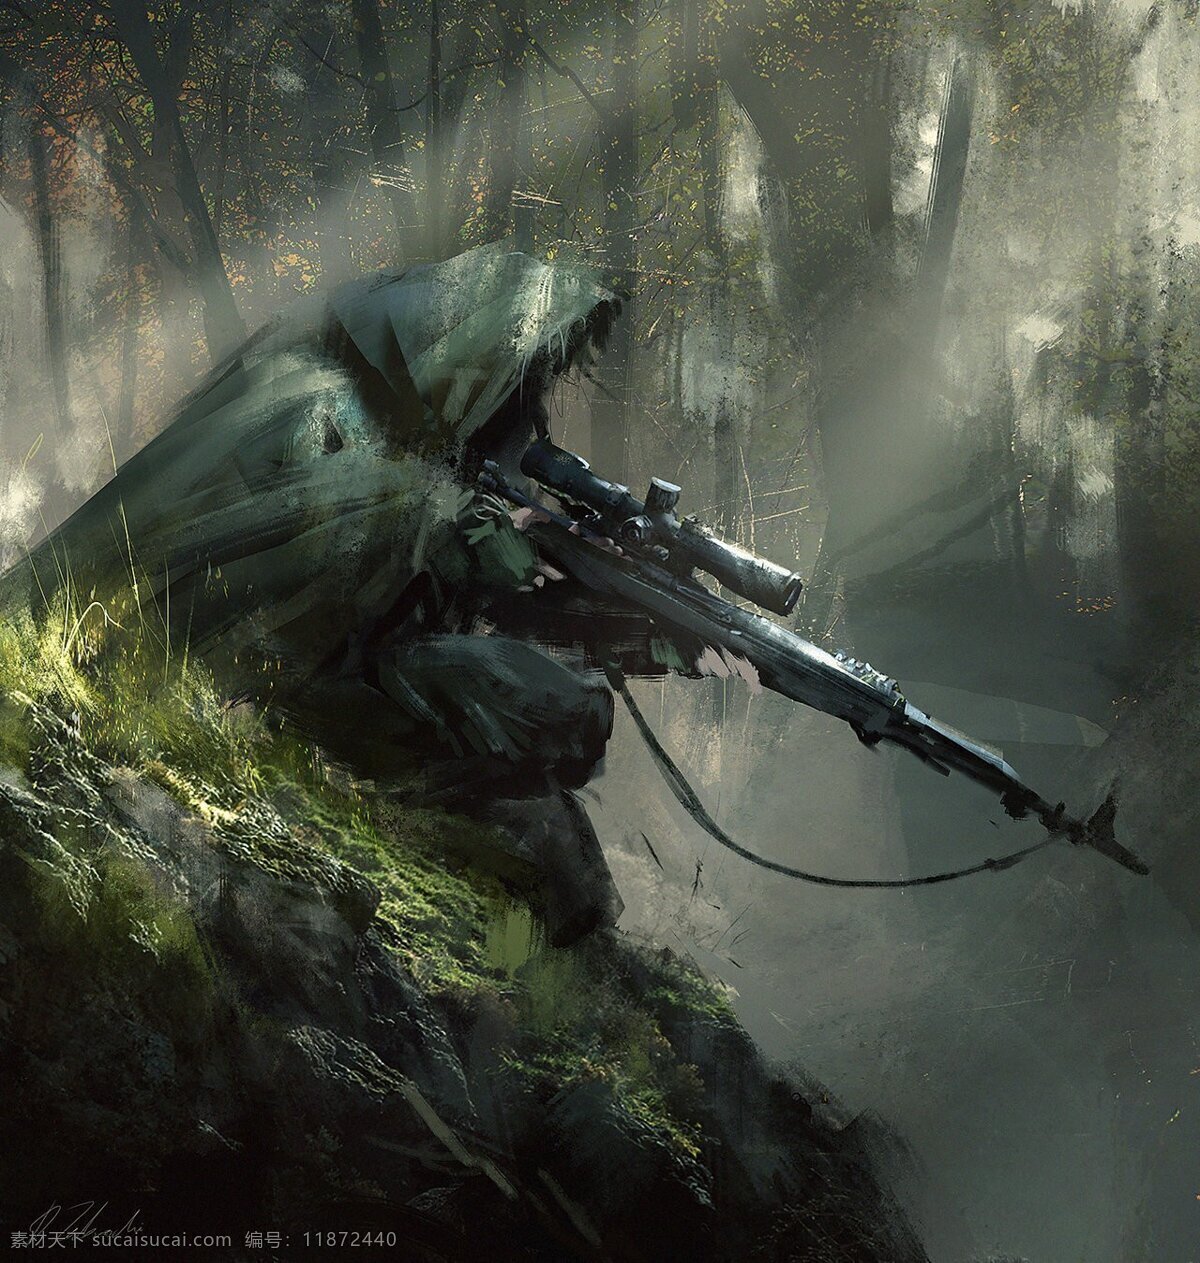 狙击手 油画 风格 油画风 朦胧感 森林 自然 绿色 伪装隐藏 军事硬核 动漫动画